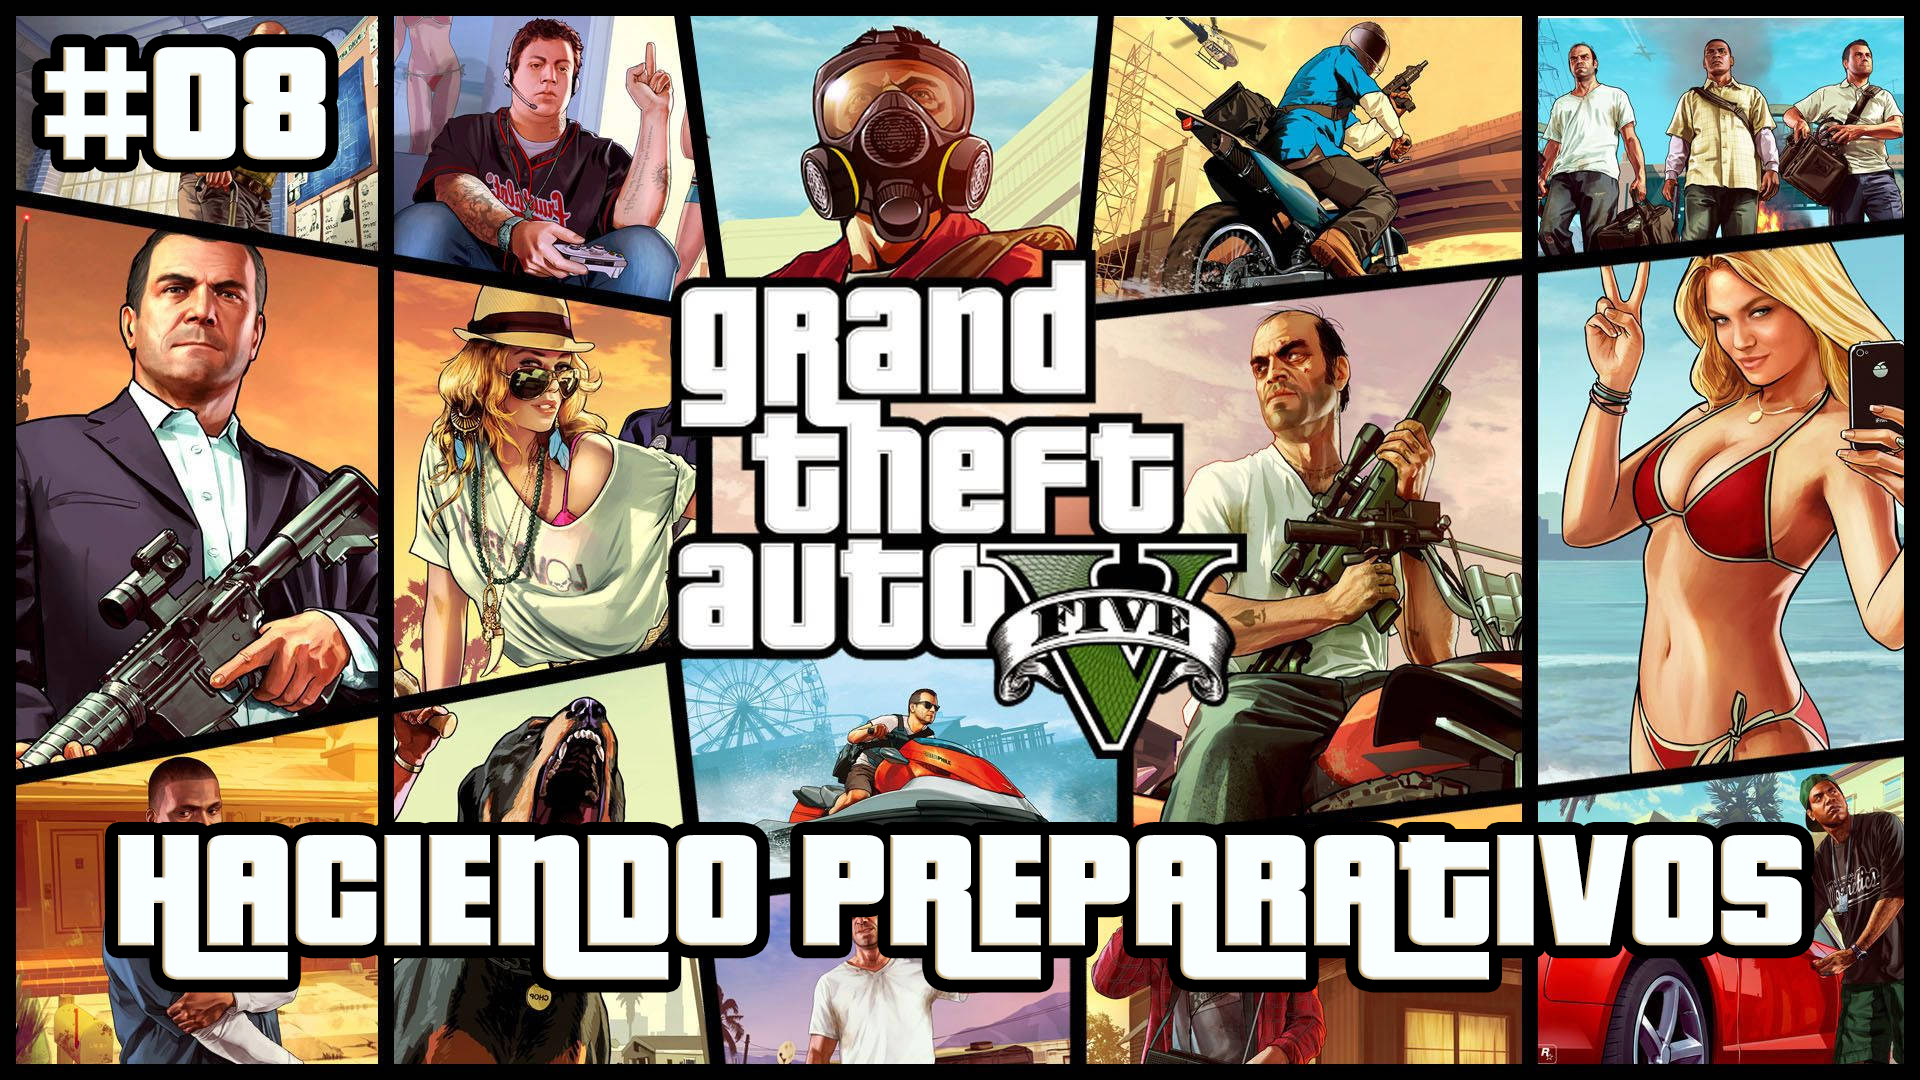 Serie Grand Theft Auto V #8 – Haciendo Preparativos